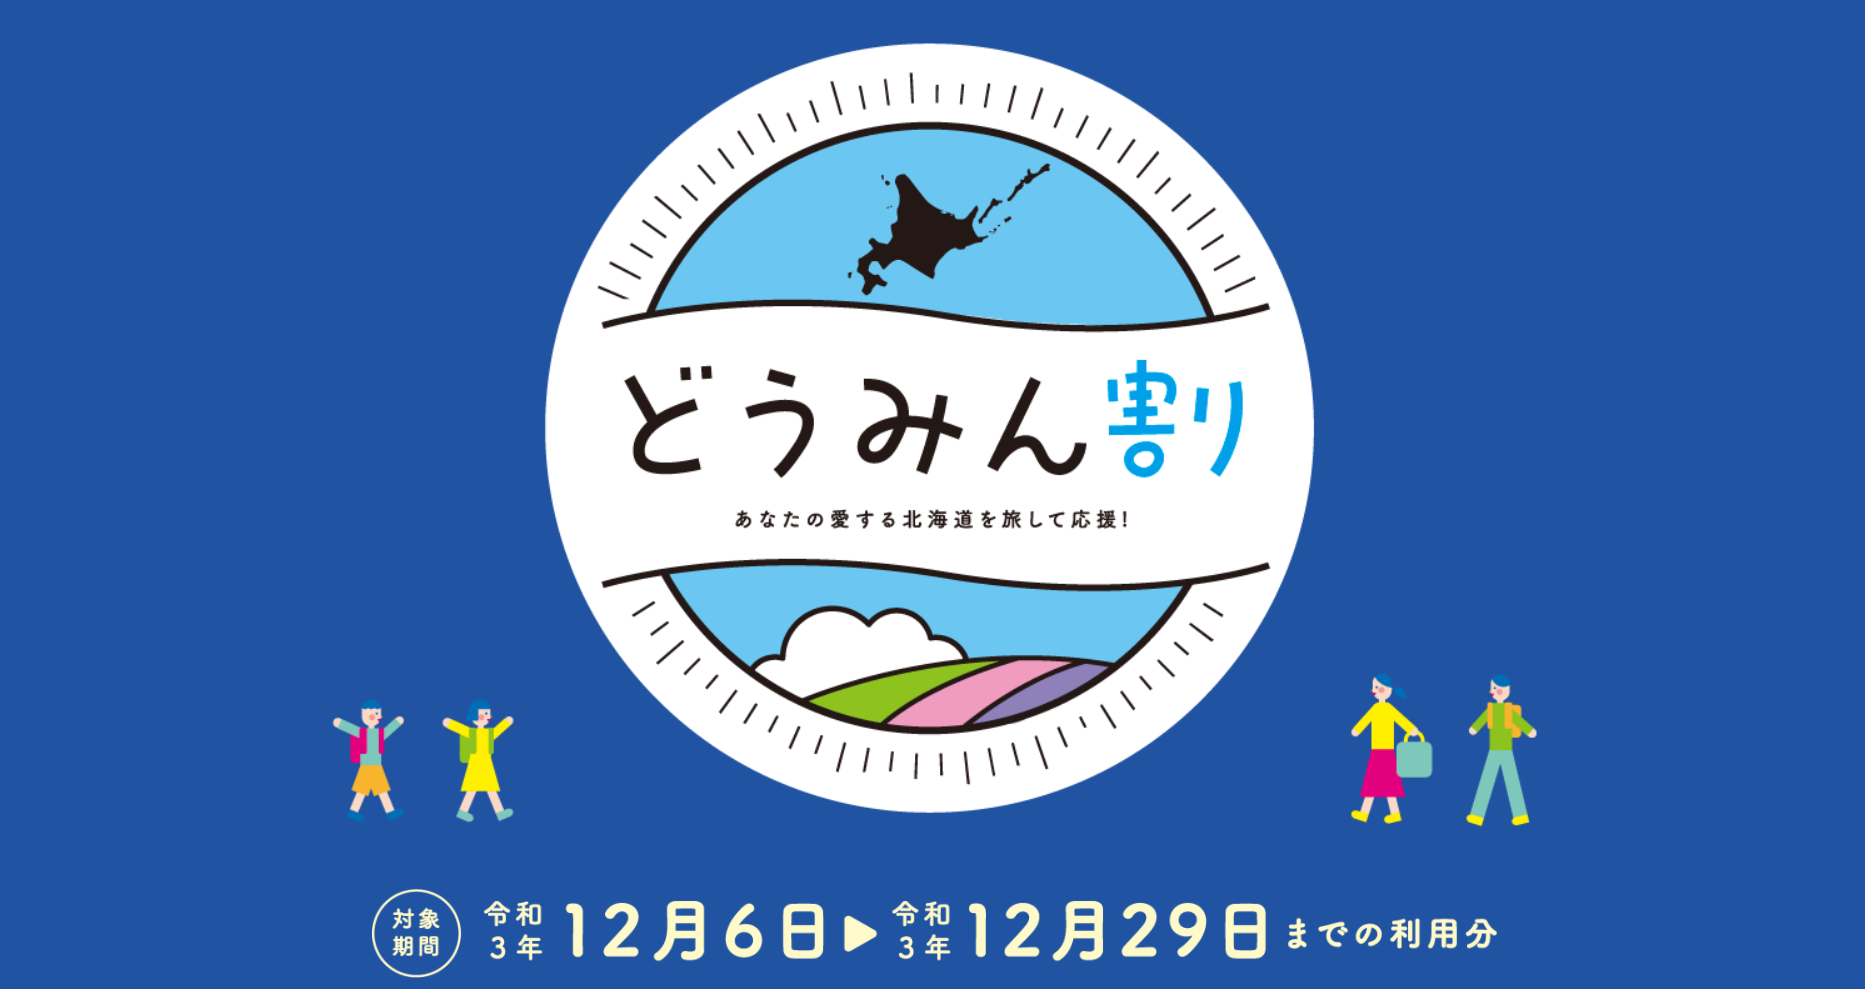 北海道の宿泊割引「どうみん割」11 月 27 日正午より受付開始 GoTo代替・ふっこう割クーポンまとめ | 民泊・ホテルテックメディア  Airstair